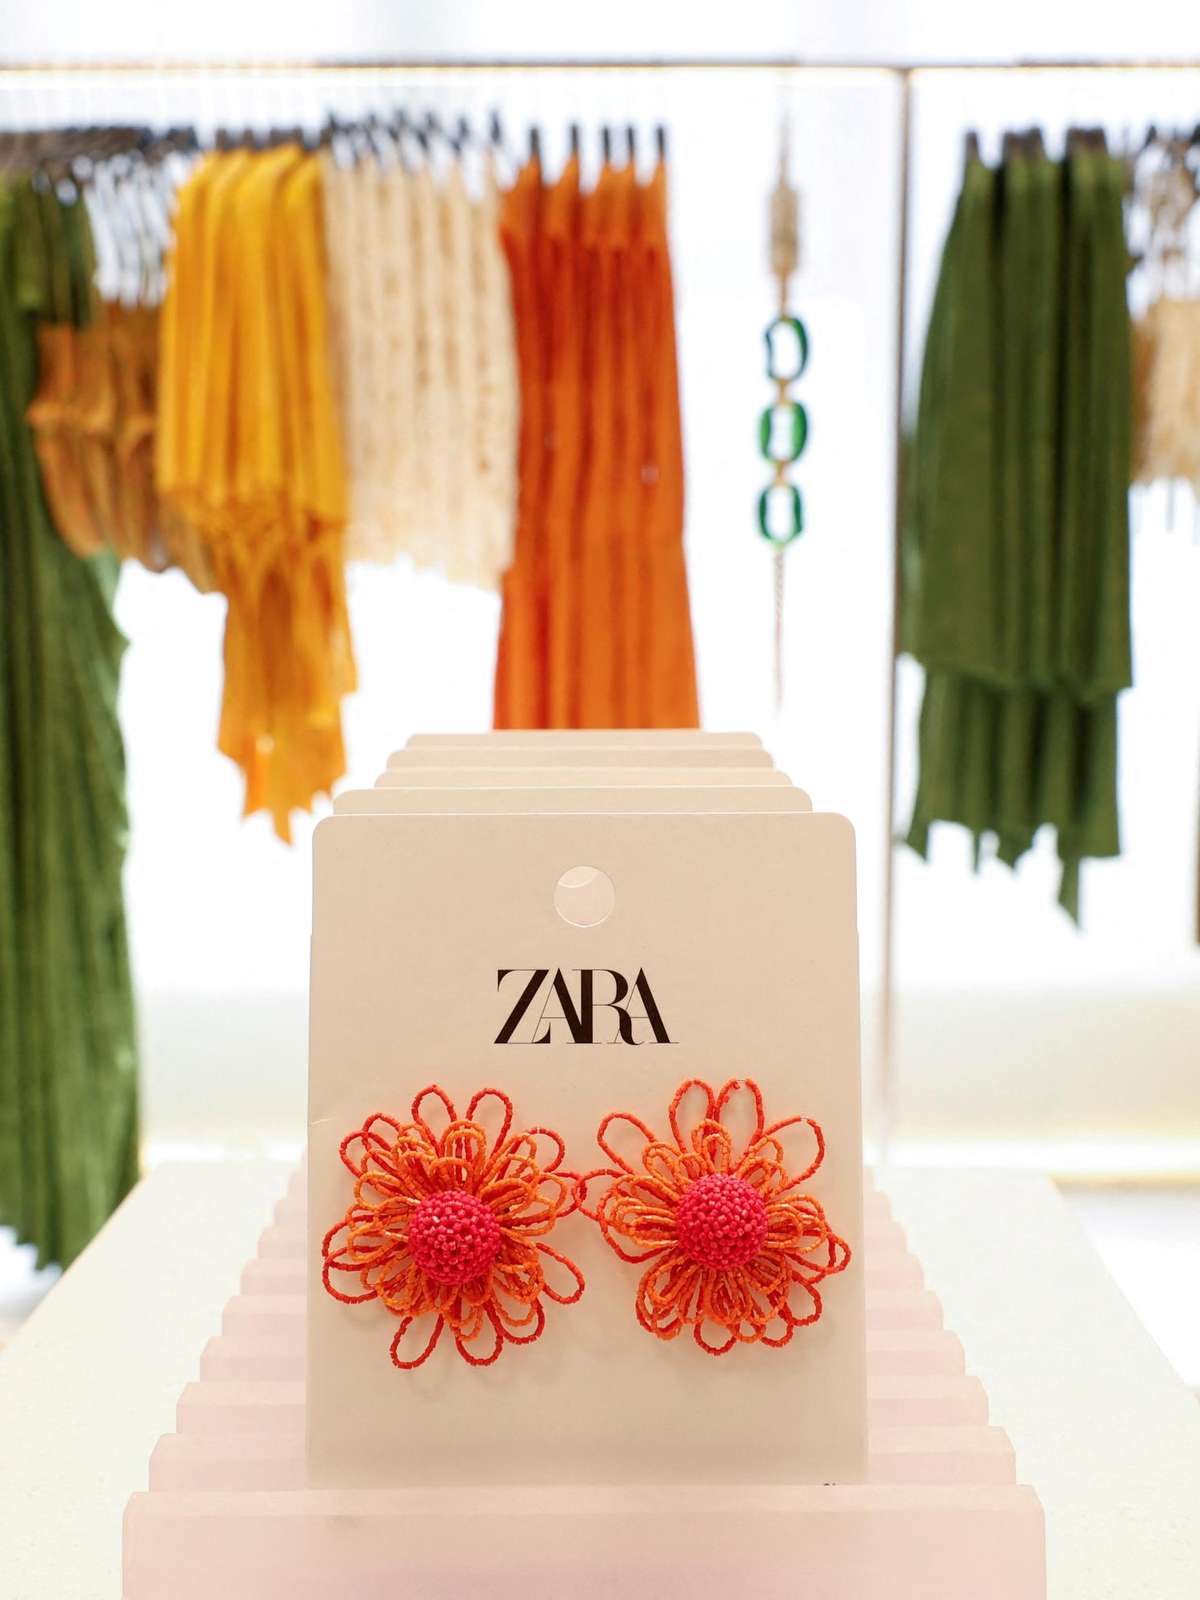 Roupas da Zara no Brasil estão entre as mais caras do mundo; veja